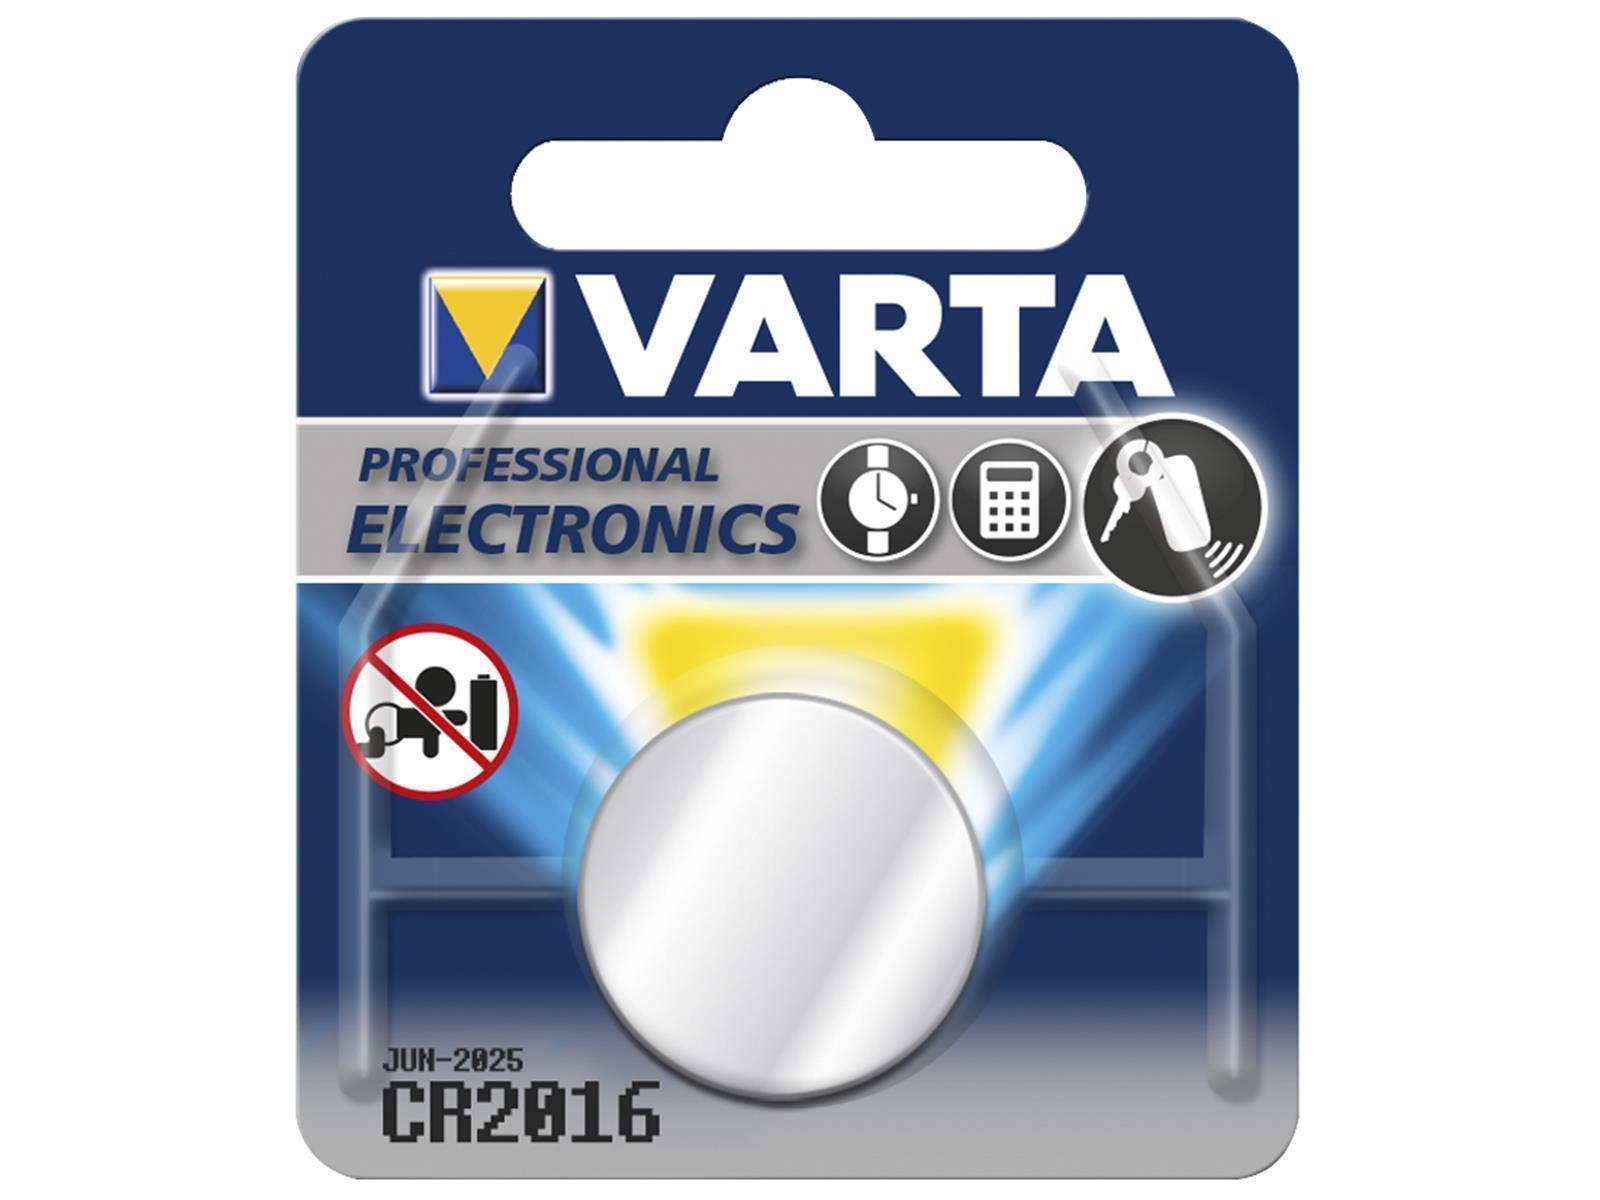 Lithium-Knopfzelle VARTA CR 2016, 90mAh, 3V, 1er-Blister